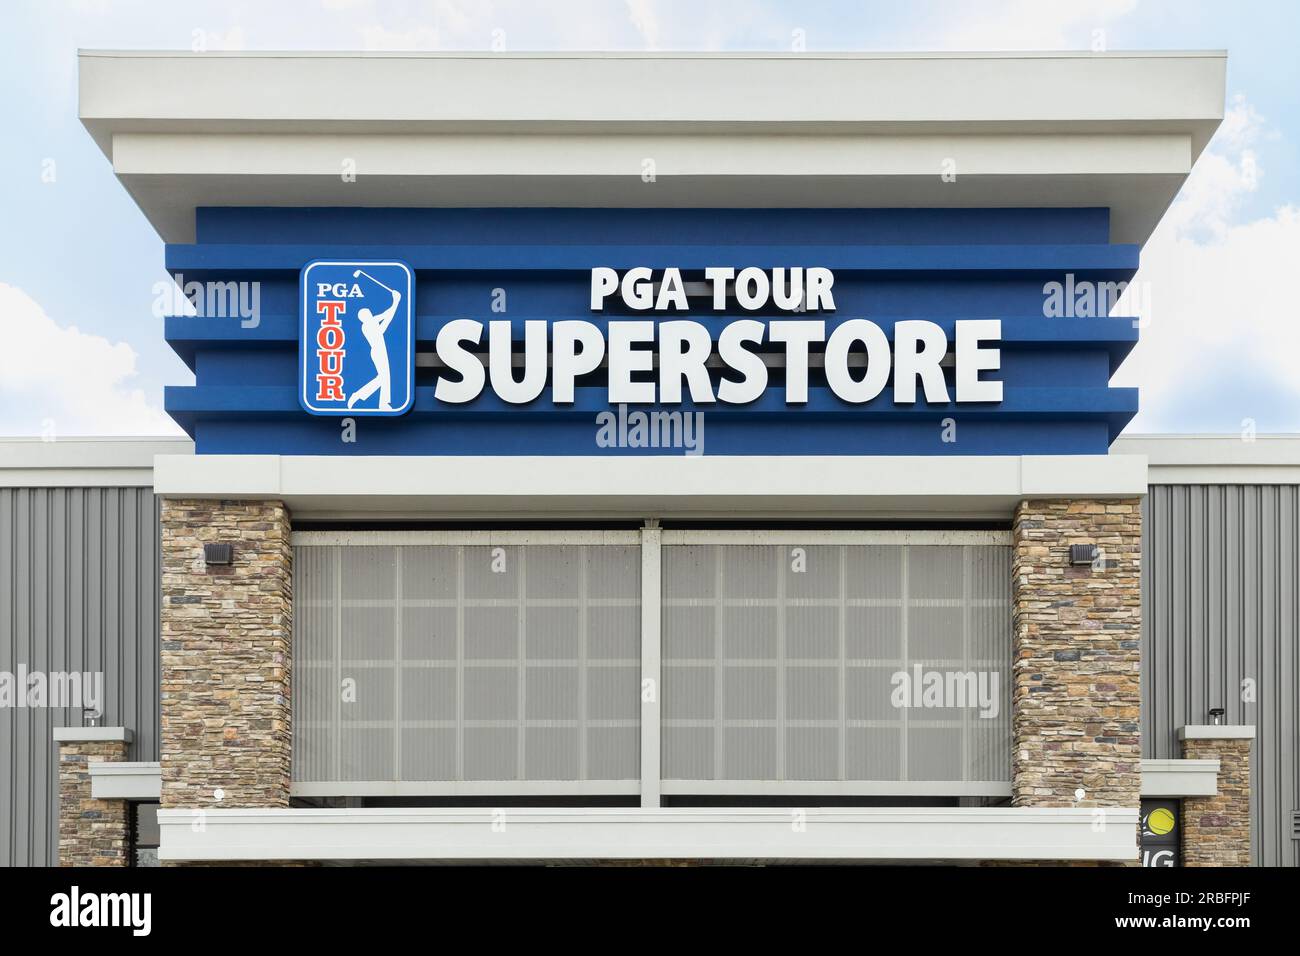 PGA Tour Superstore ist eine Kette, die Golf- und Tennisausrüstung exklusiv an Standorten in den USA verkauft. Stockfoto